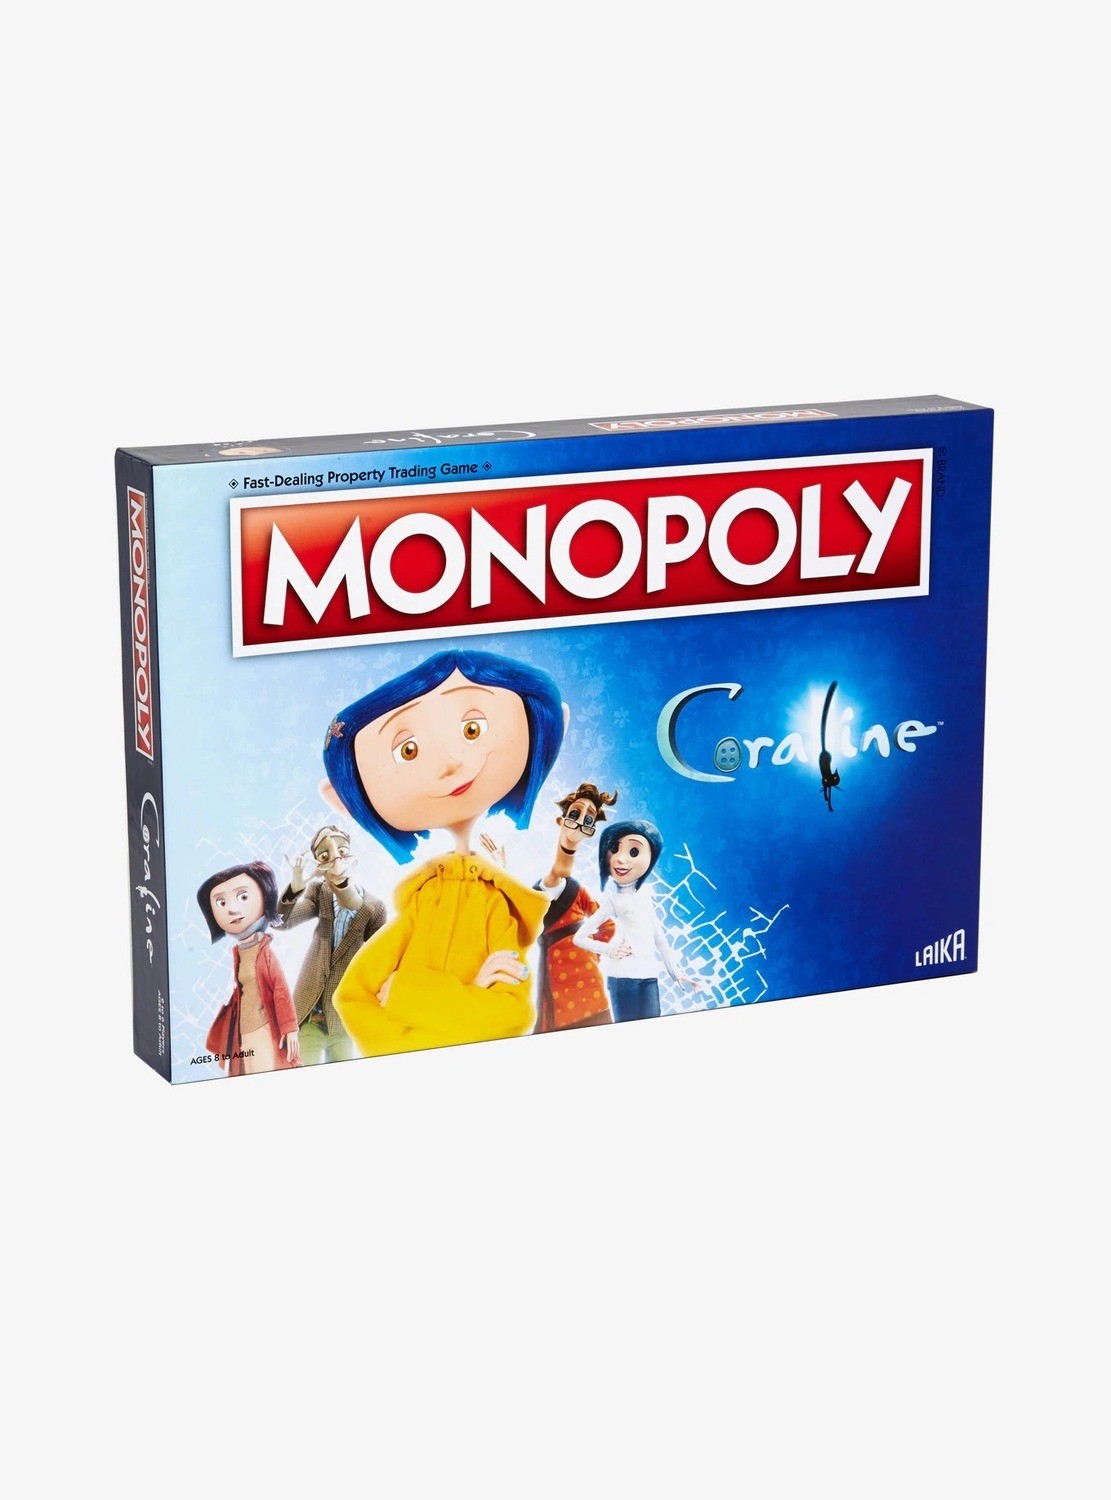 Monopoly Coraline